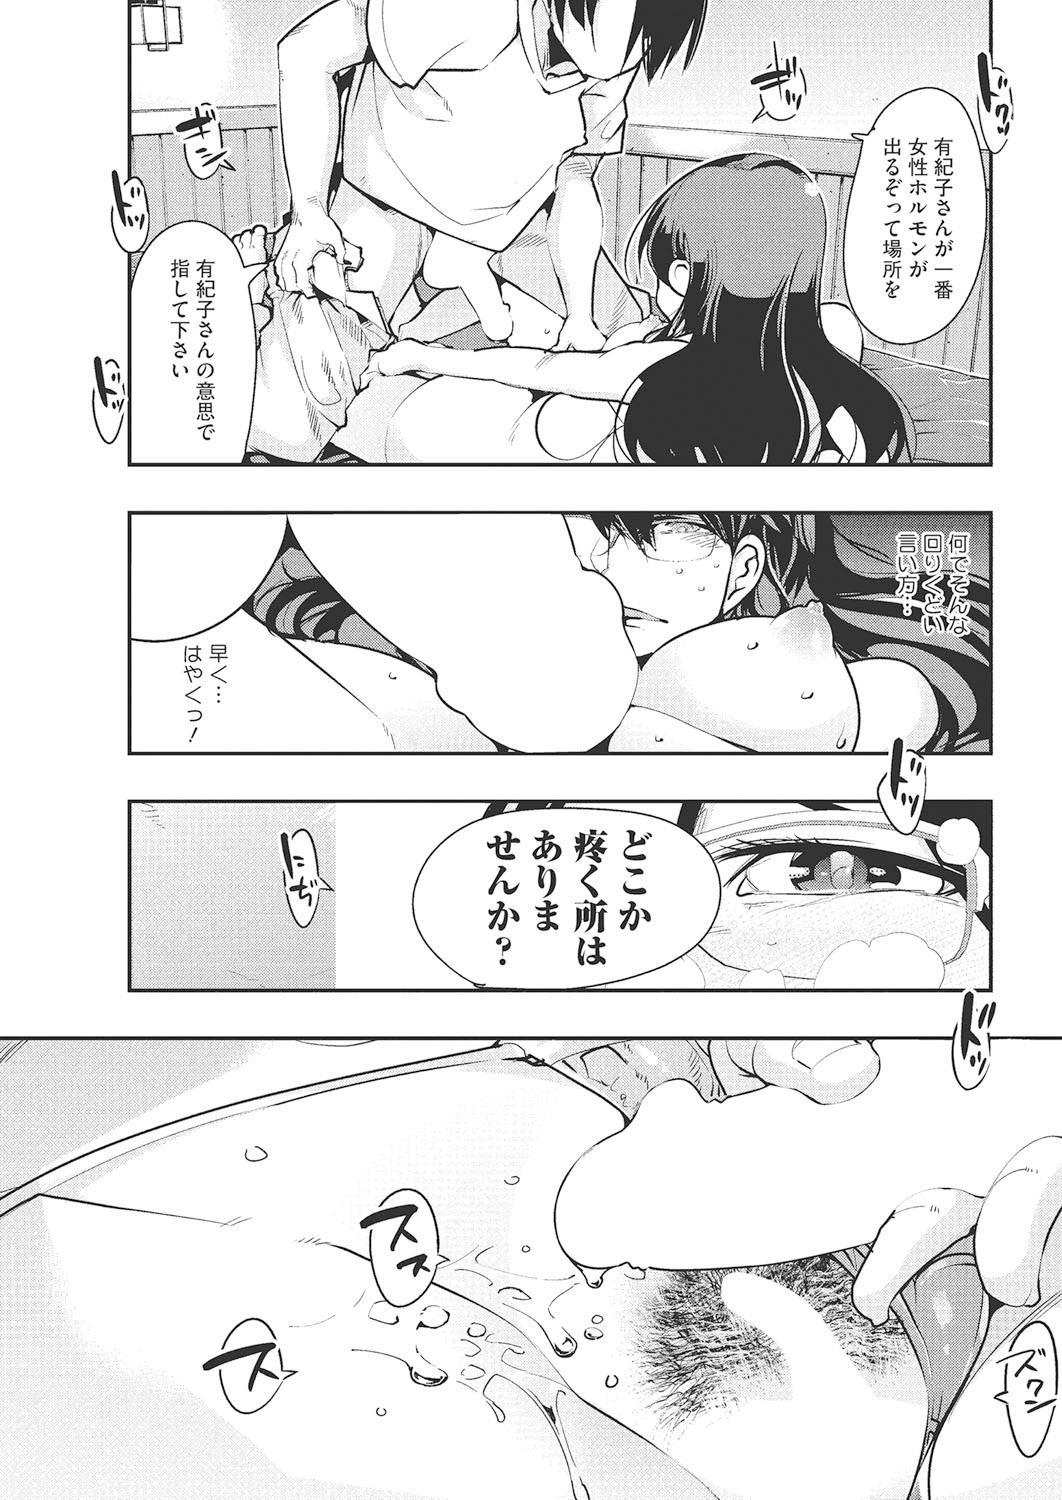 Blows Darashinai Ana Uniform - Page 10